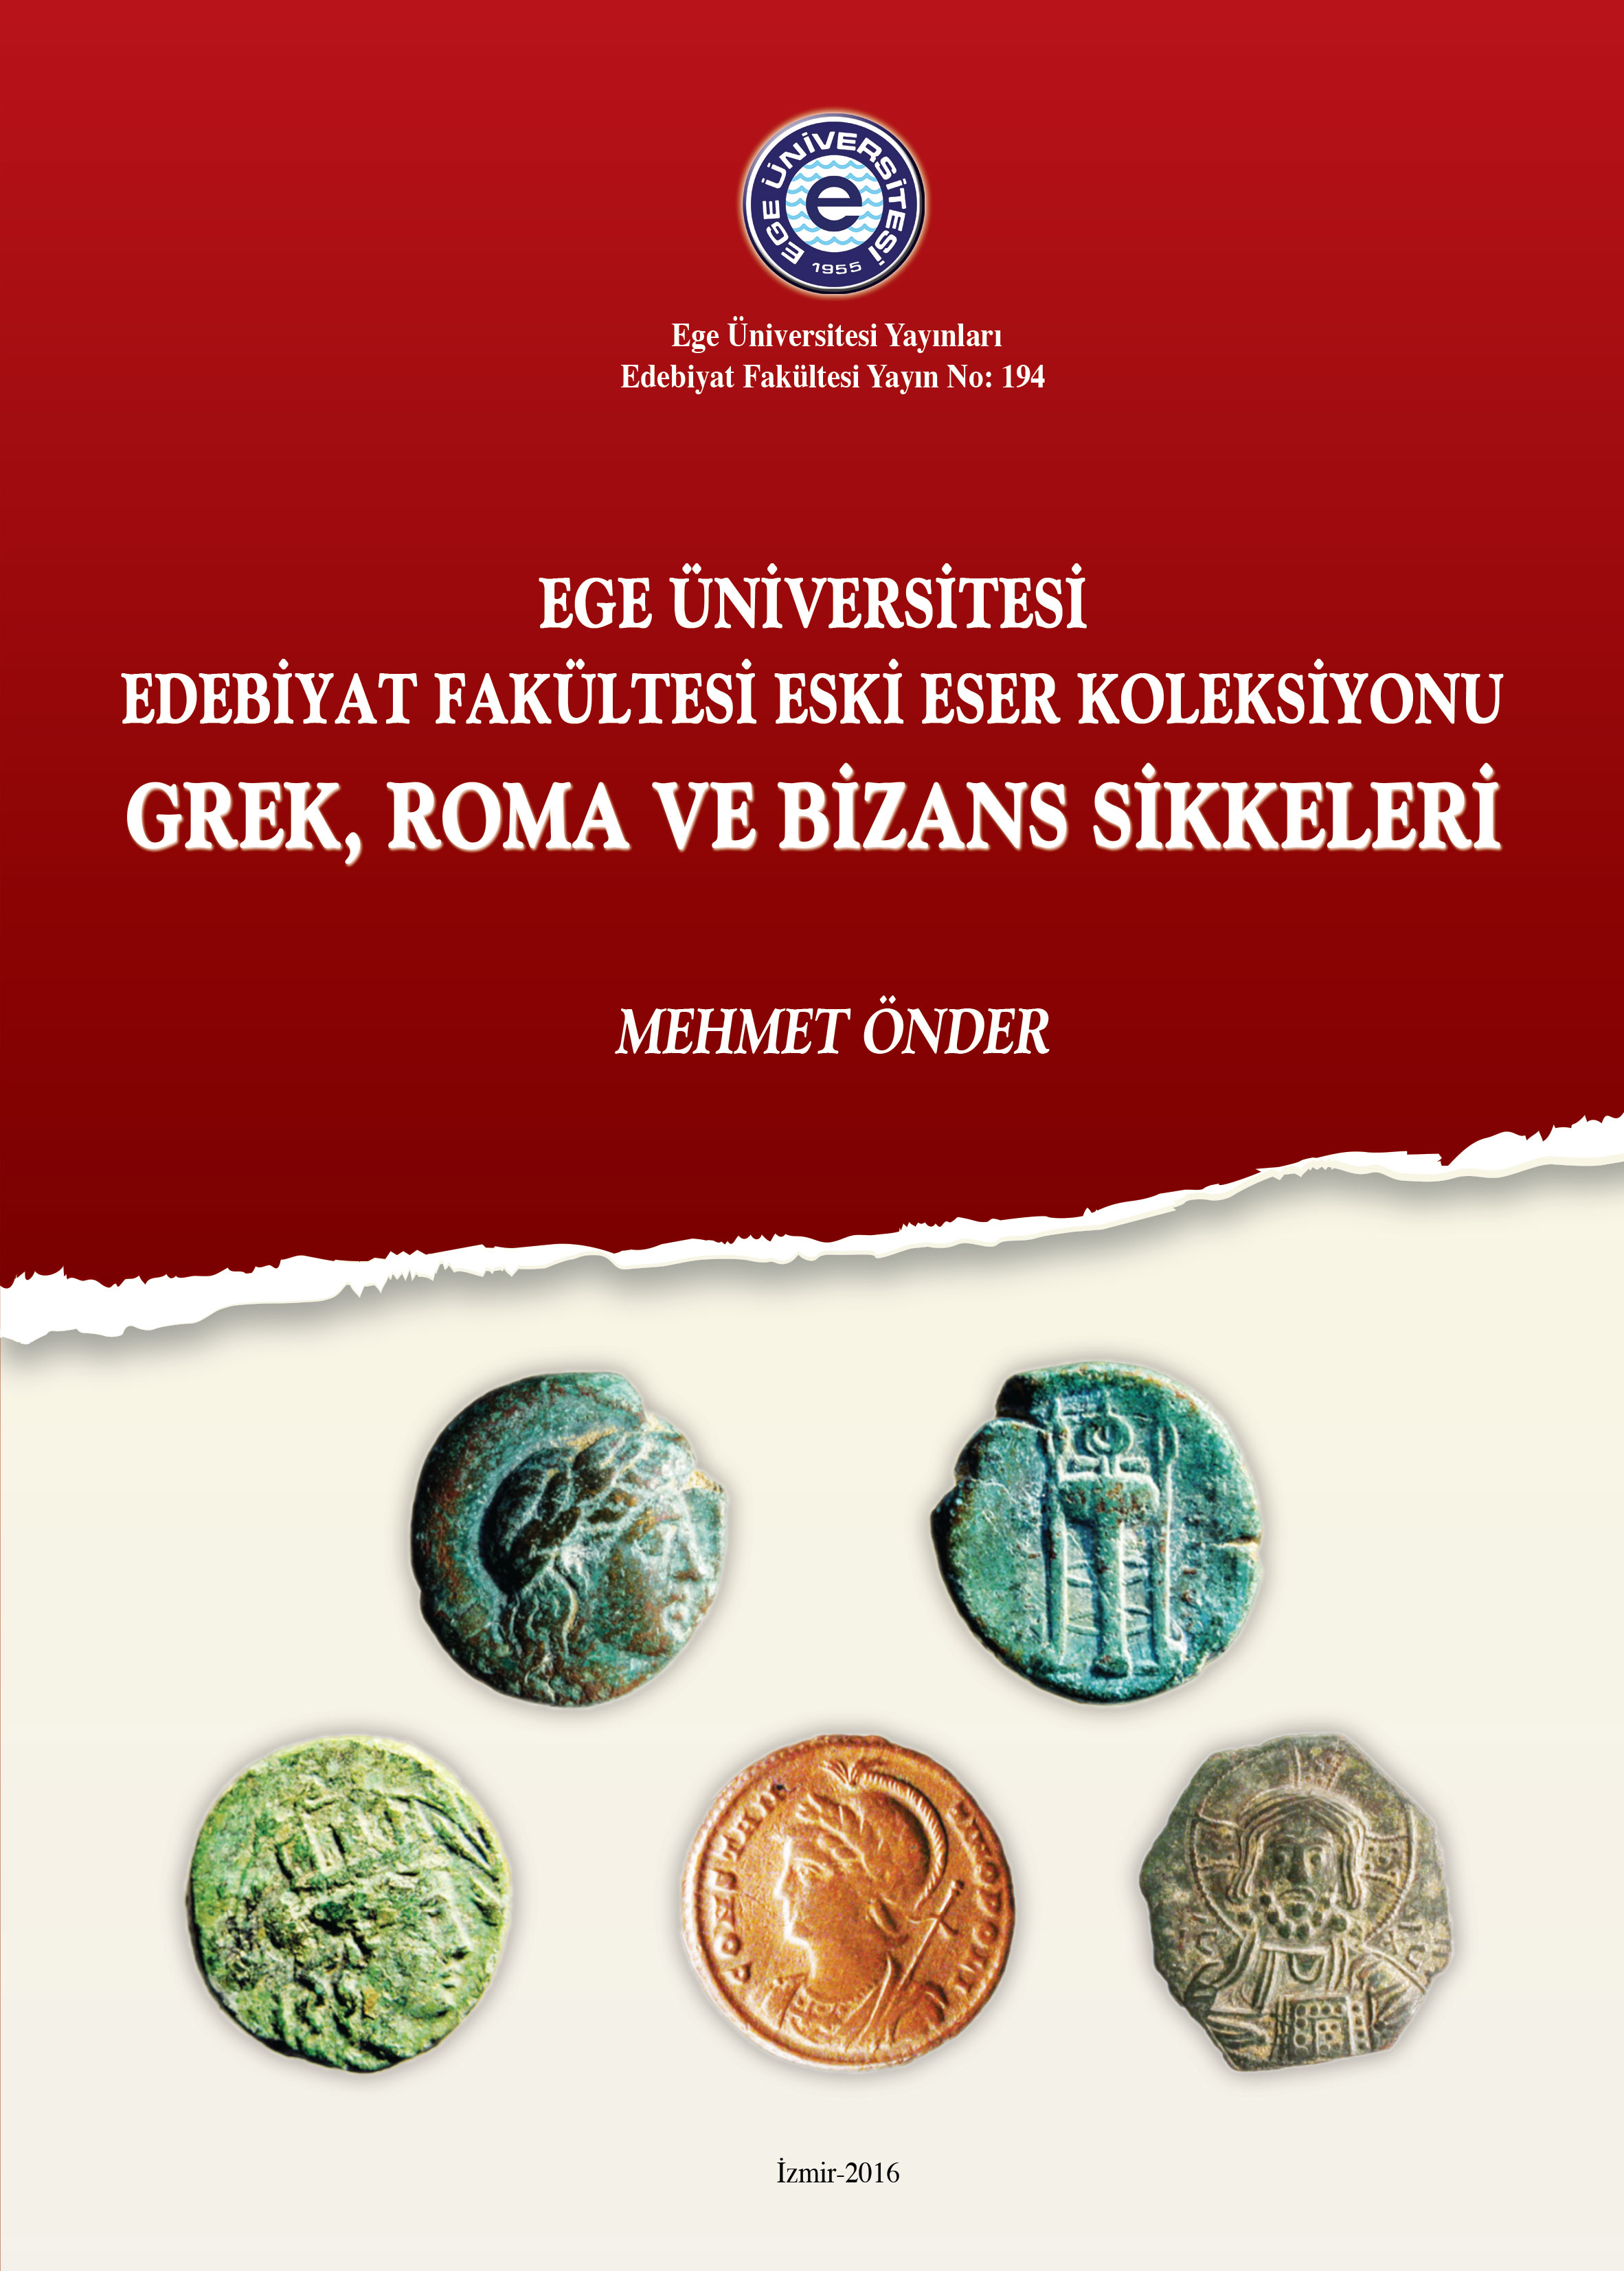 Ege Üniversitesi Edebiyat Fakültesi Eski Eser Koleksiyonu Grek, Roma ve Bizans Sikkeleri 